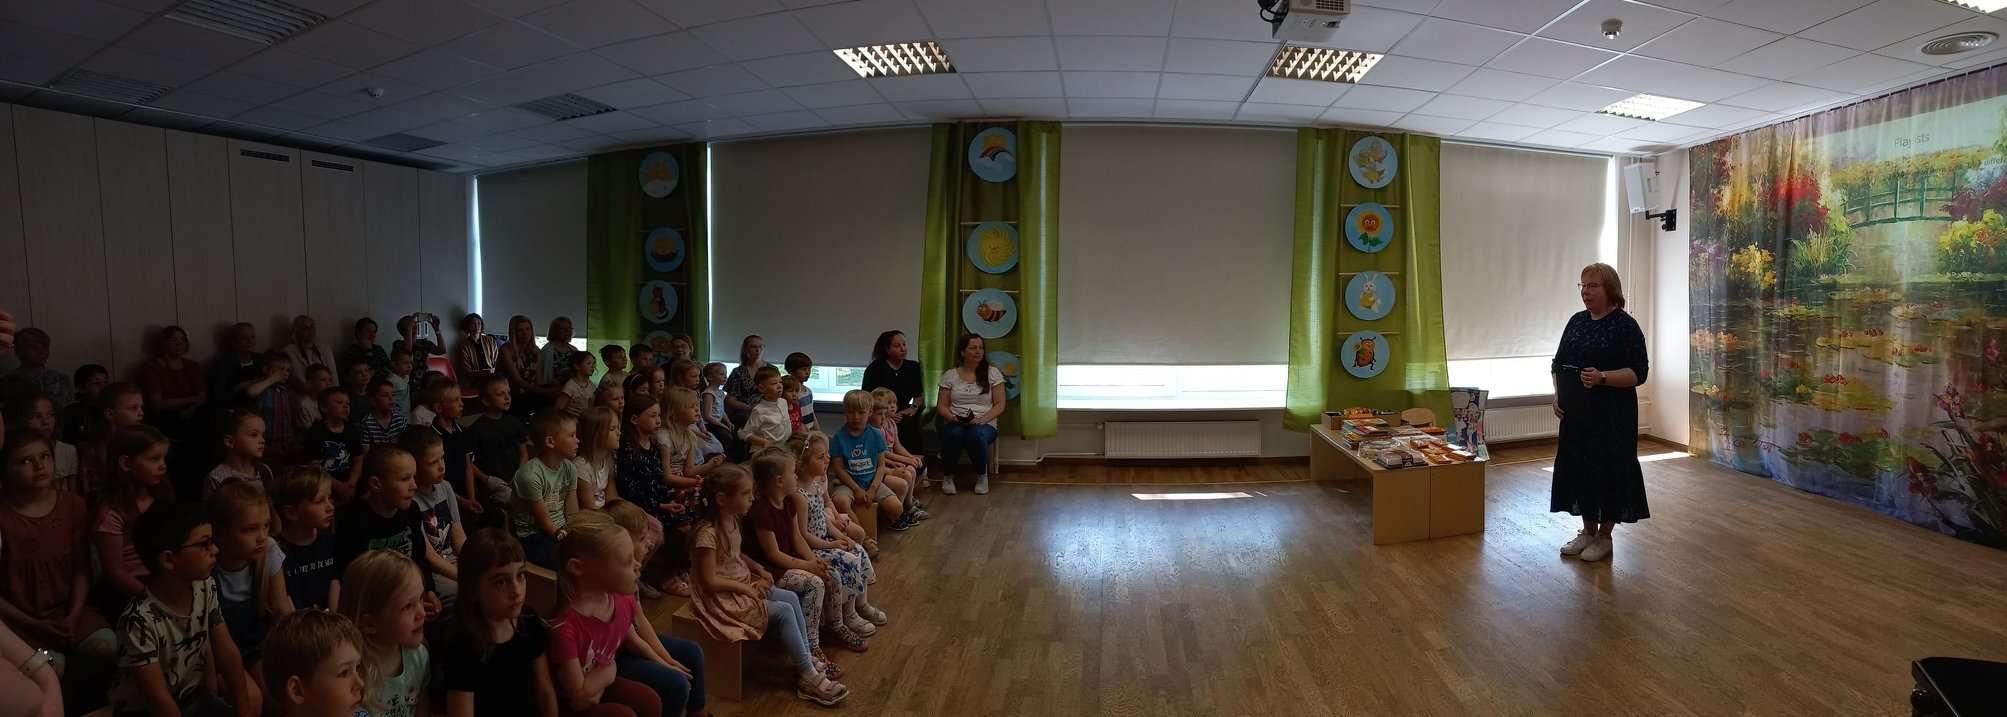 asteaias Päikene Põhja-Tallinna lasteaedadele mõeldud lugemisväljakutse "Meie Loeme!" viienda hooaja lõpetamine. Anu Sepp